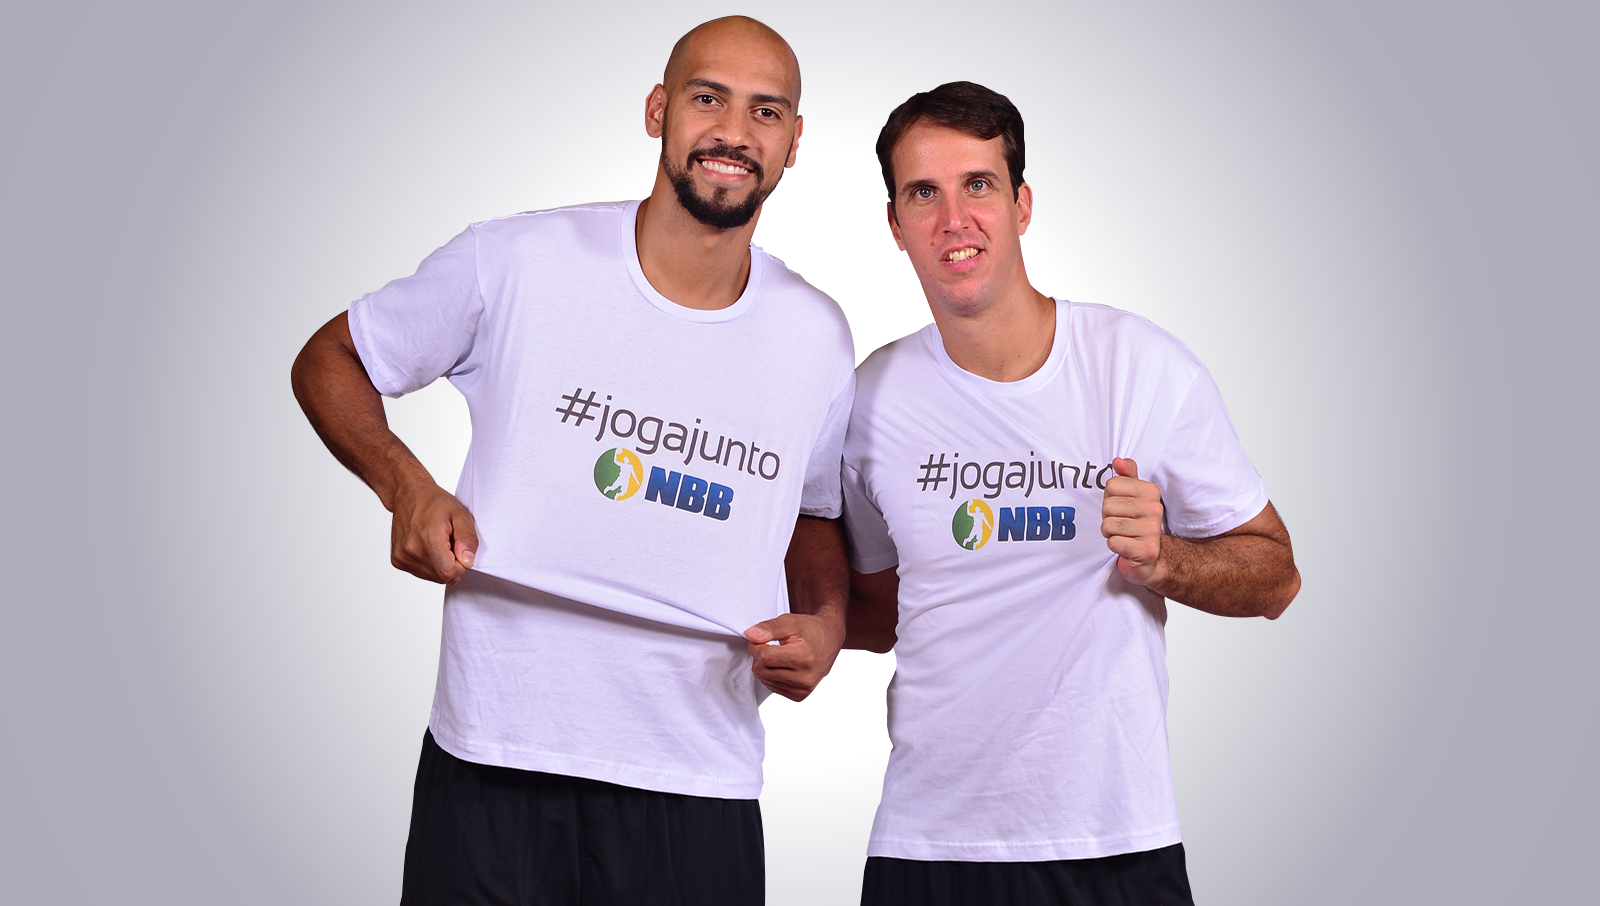 Astros do NBB, como os alas Marcelinho e Marquinhos, do Flamengo, participarão ativamente da campanha (João Pires/LNB)